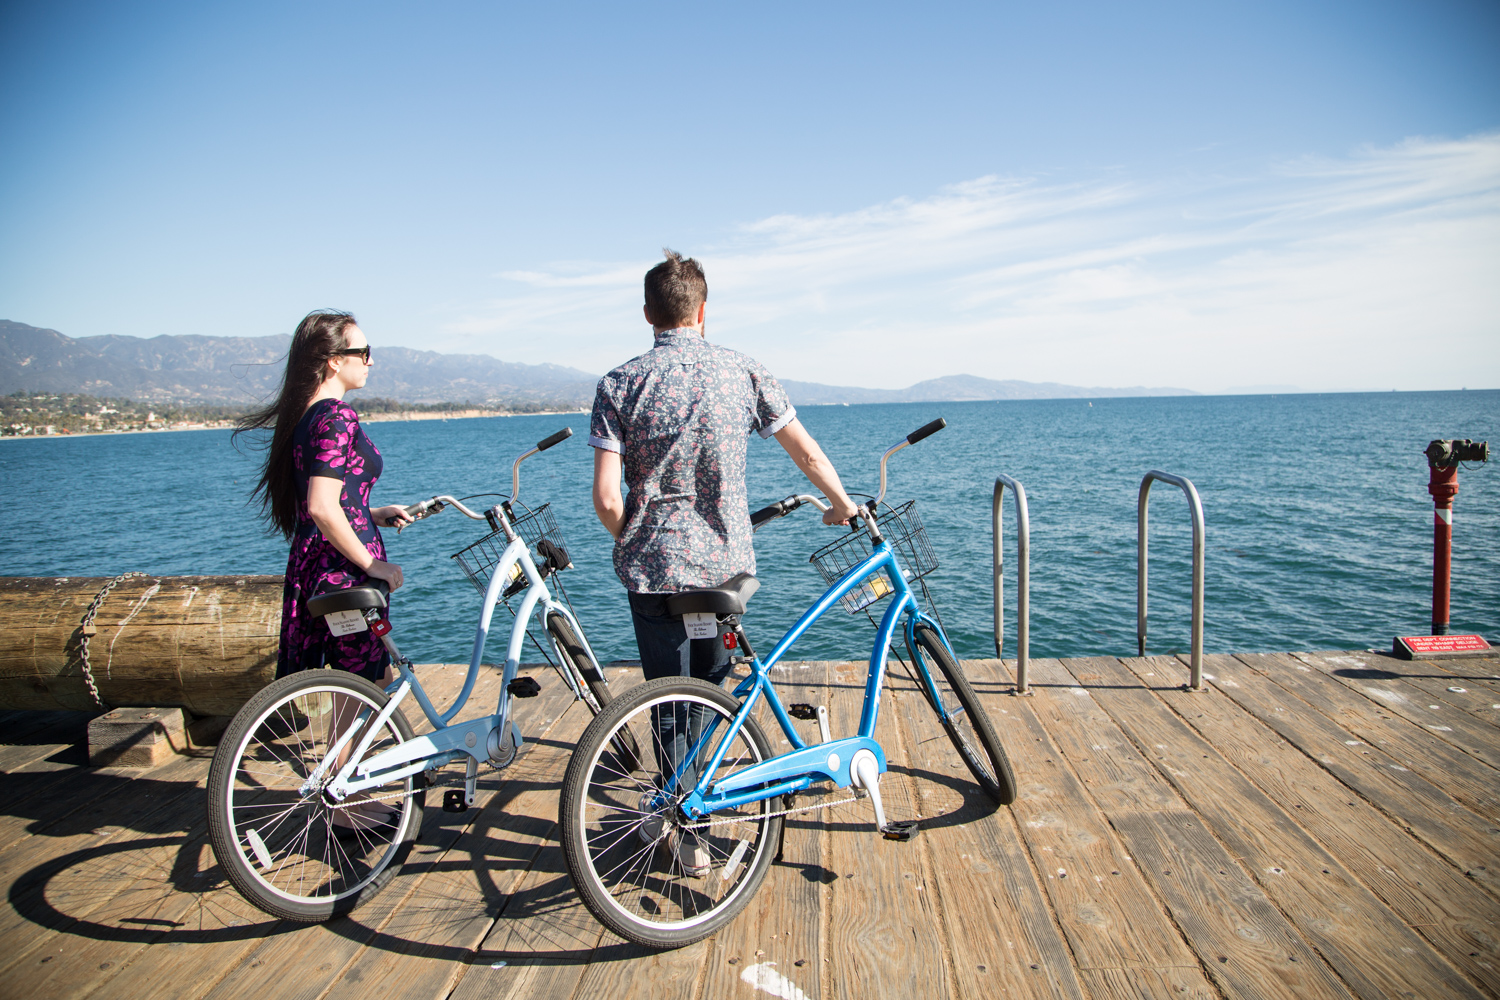 Four Seasons The Biltmore Santa Barbara Bike Rentals Review